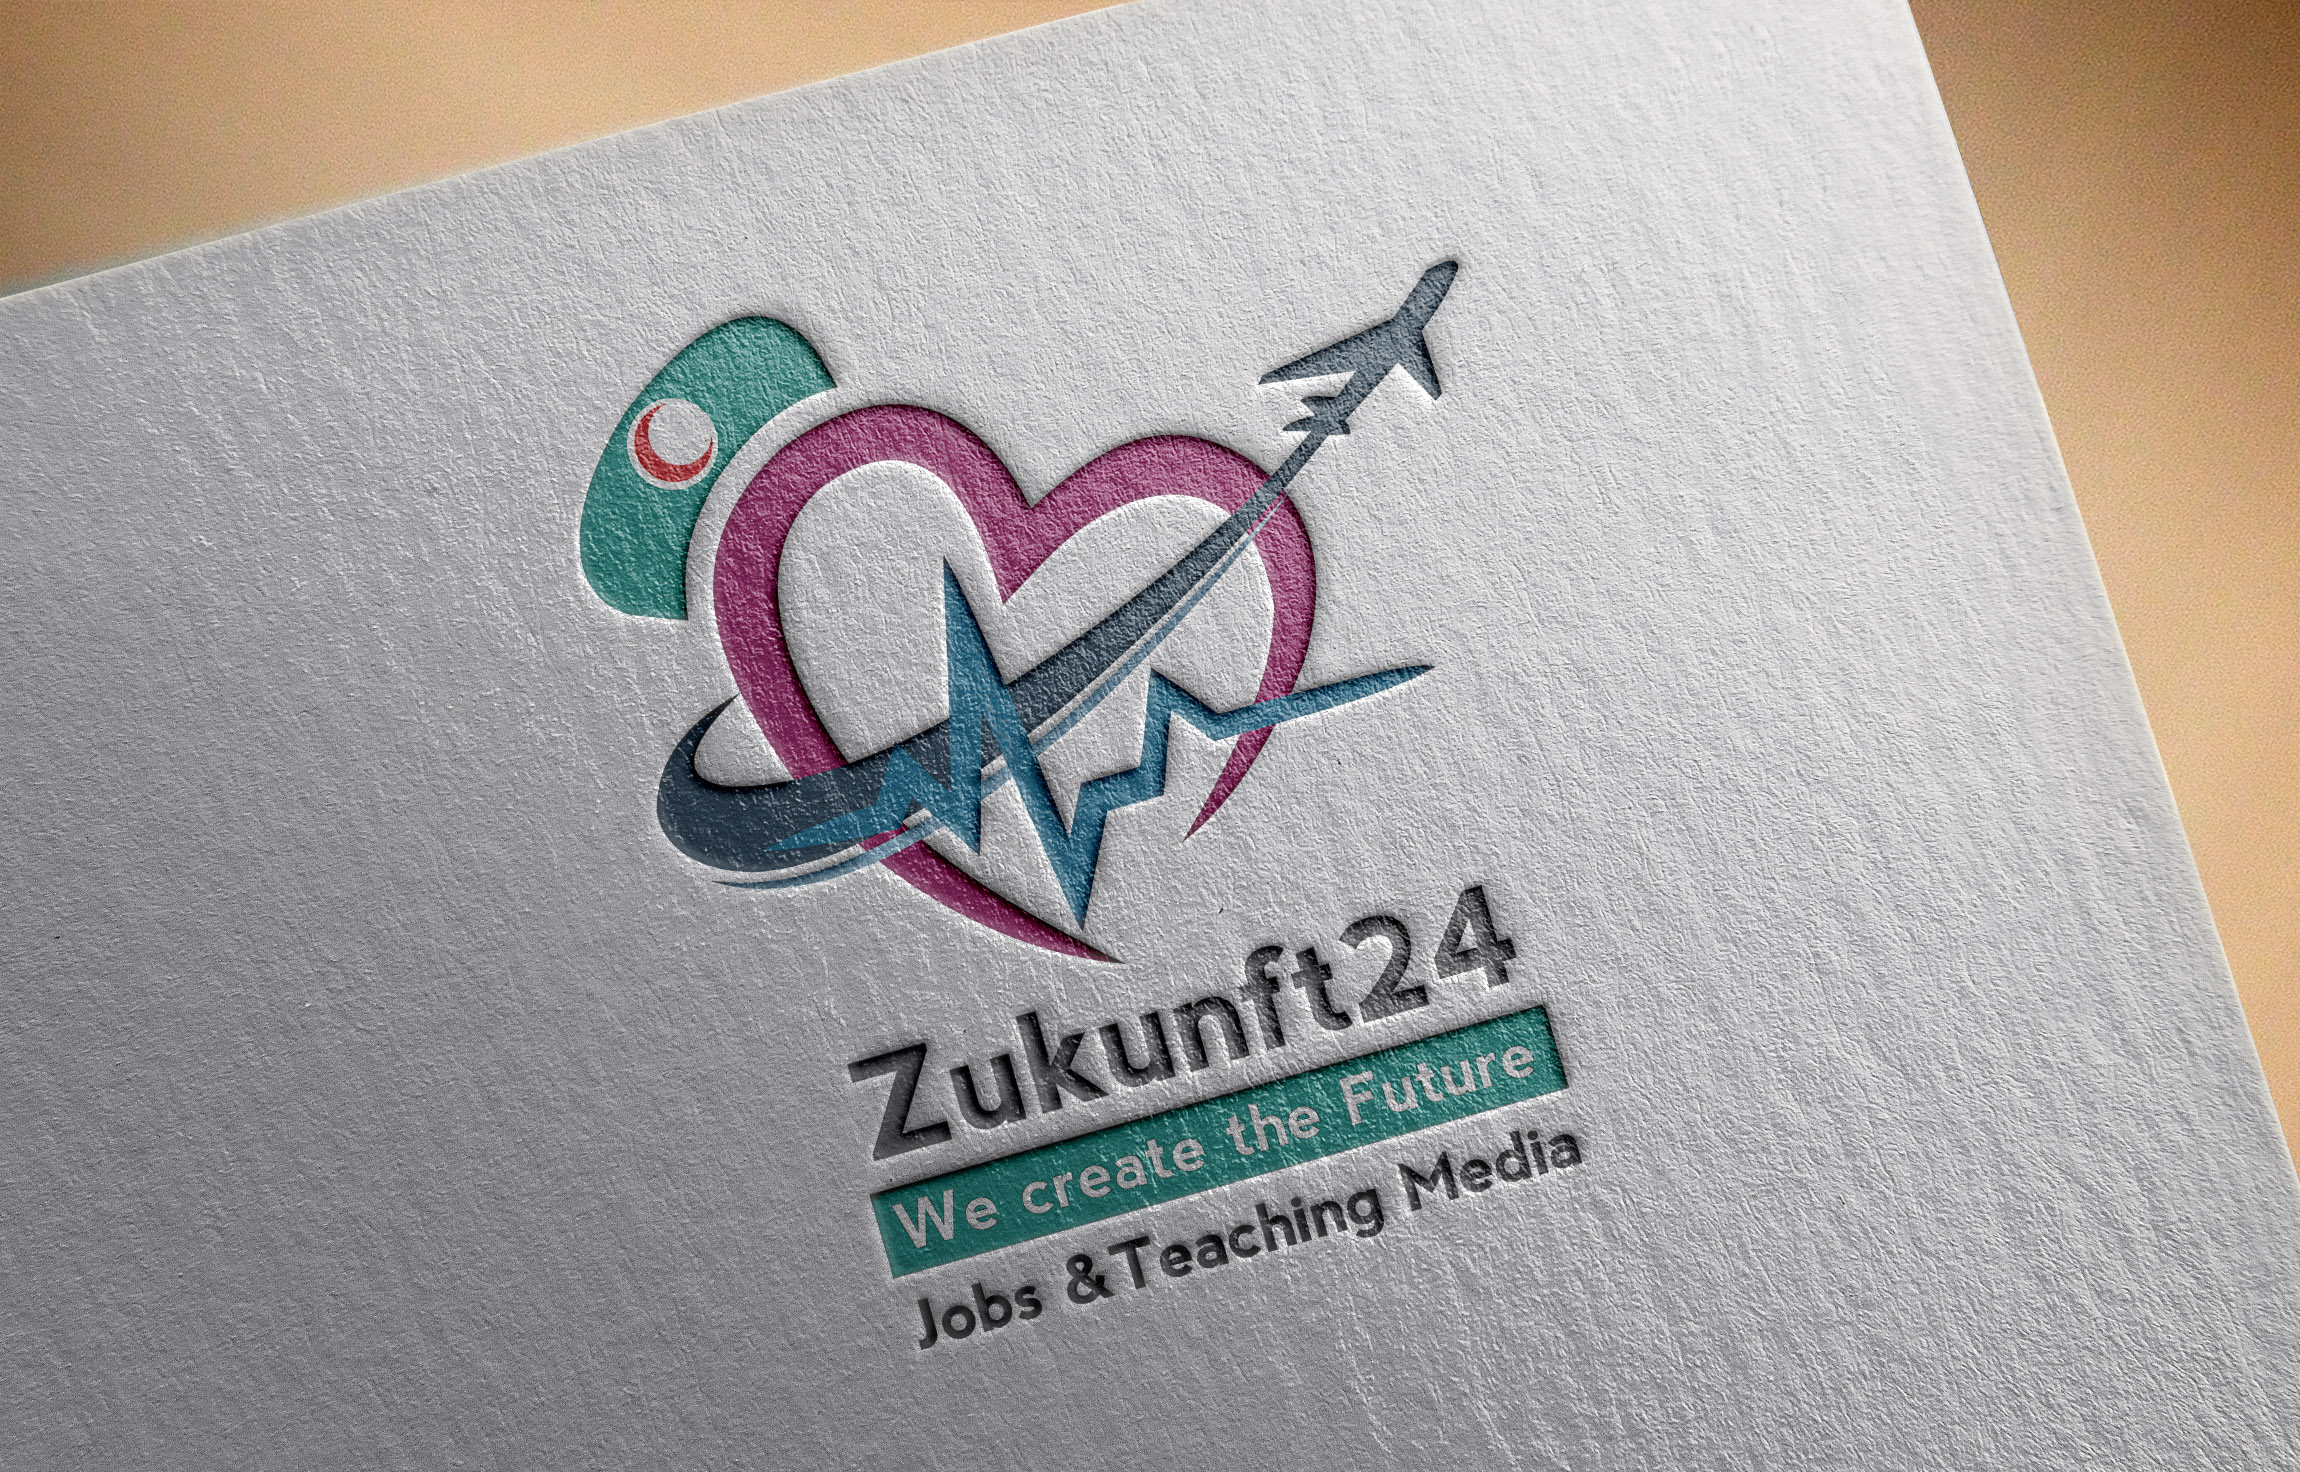 موكاب تتصميم شعار لوجو شركة زوكونفت 24 للتوظيف والوسائط التعليمية 2